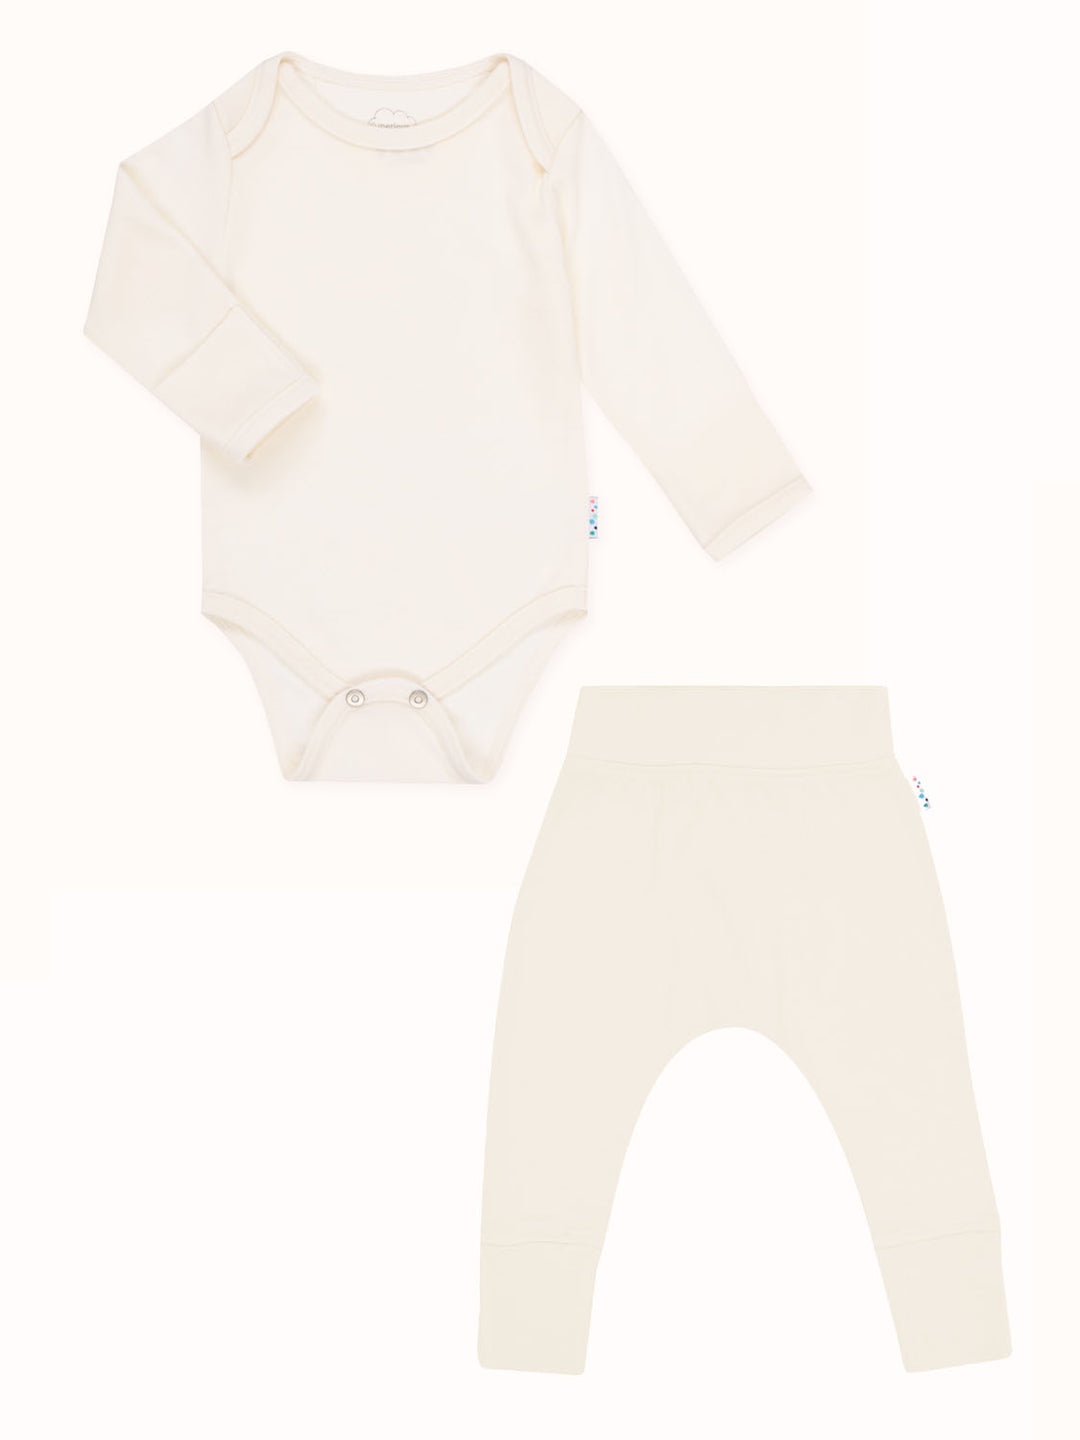 baby merino thermal base layer Superlove Merino white #colour_pure-ivory